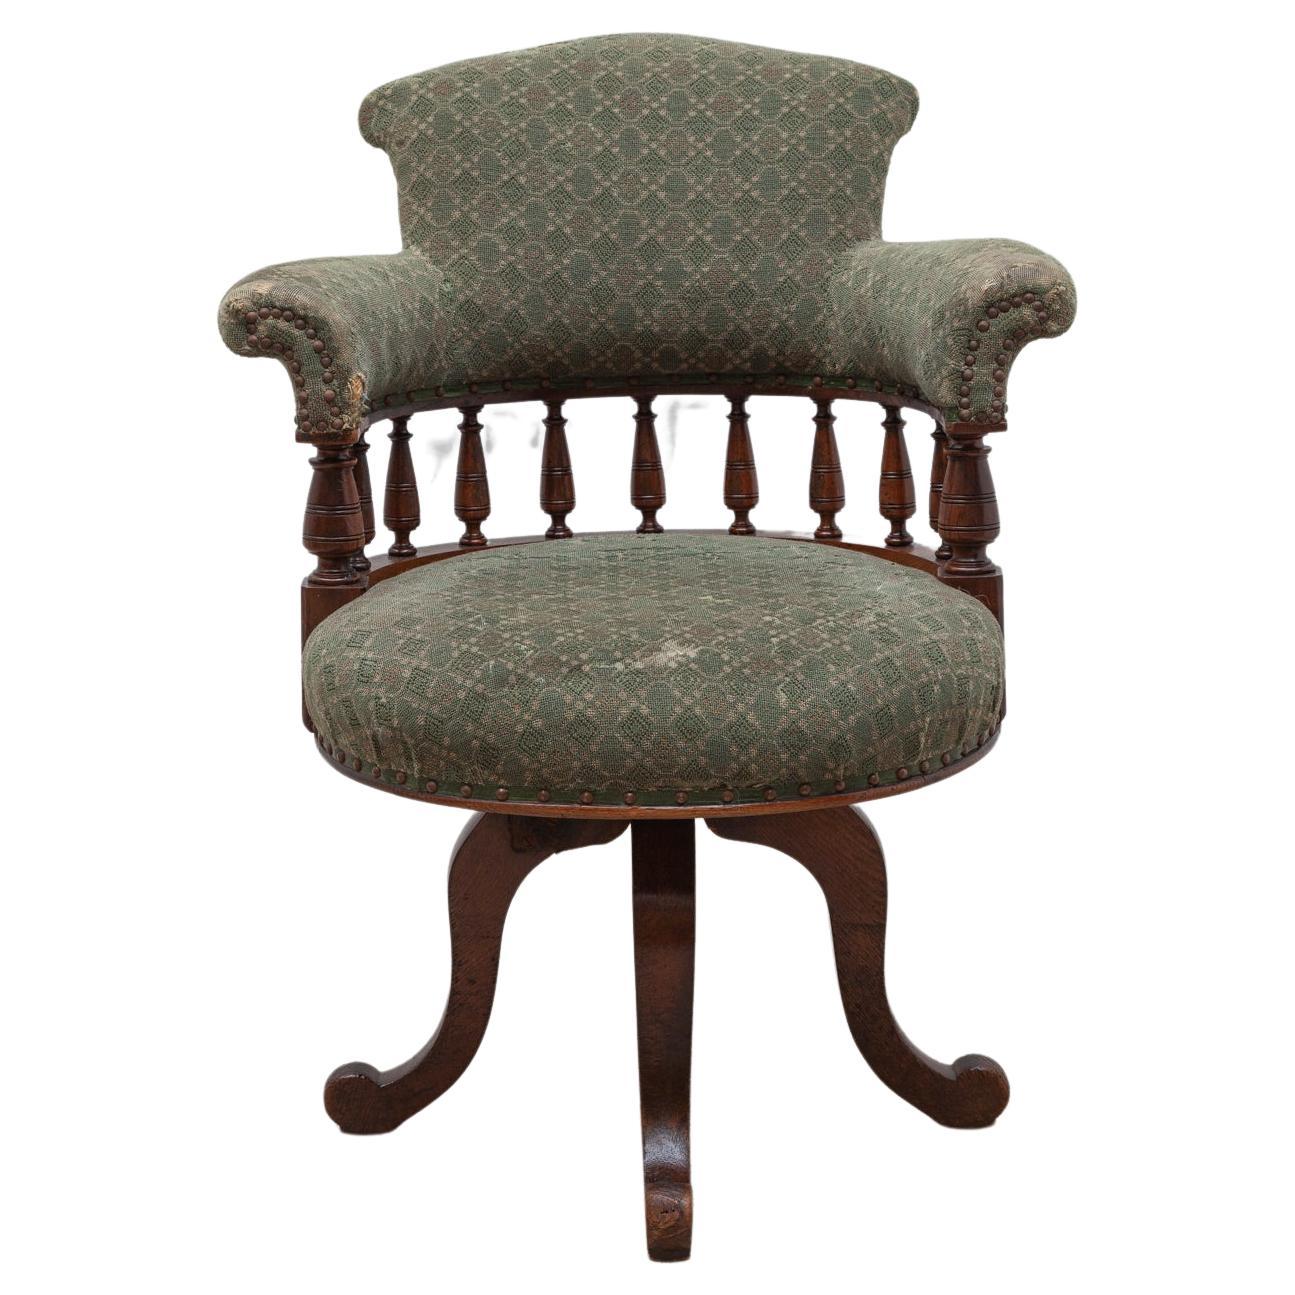 Magnifique chaise de bureau Chippendale pivotante de l'époque de la marine marchande. La chaise du capitaine, avec l'ajout moderne d'un mécanisme de rotation et d'inclinaison. La chaise de bureau confortable est dans son bon état d'origine, le